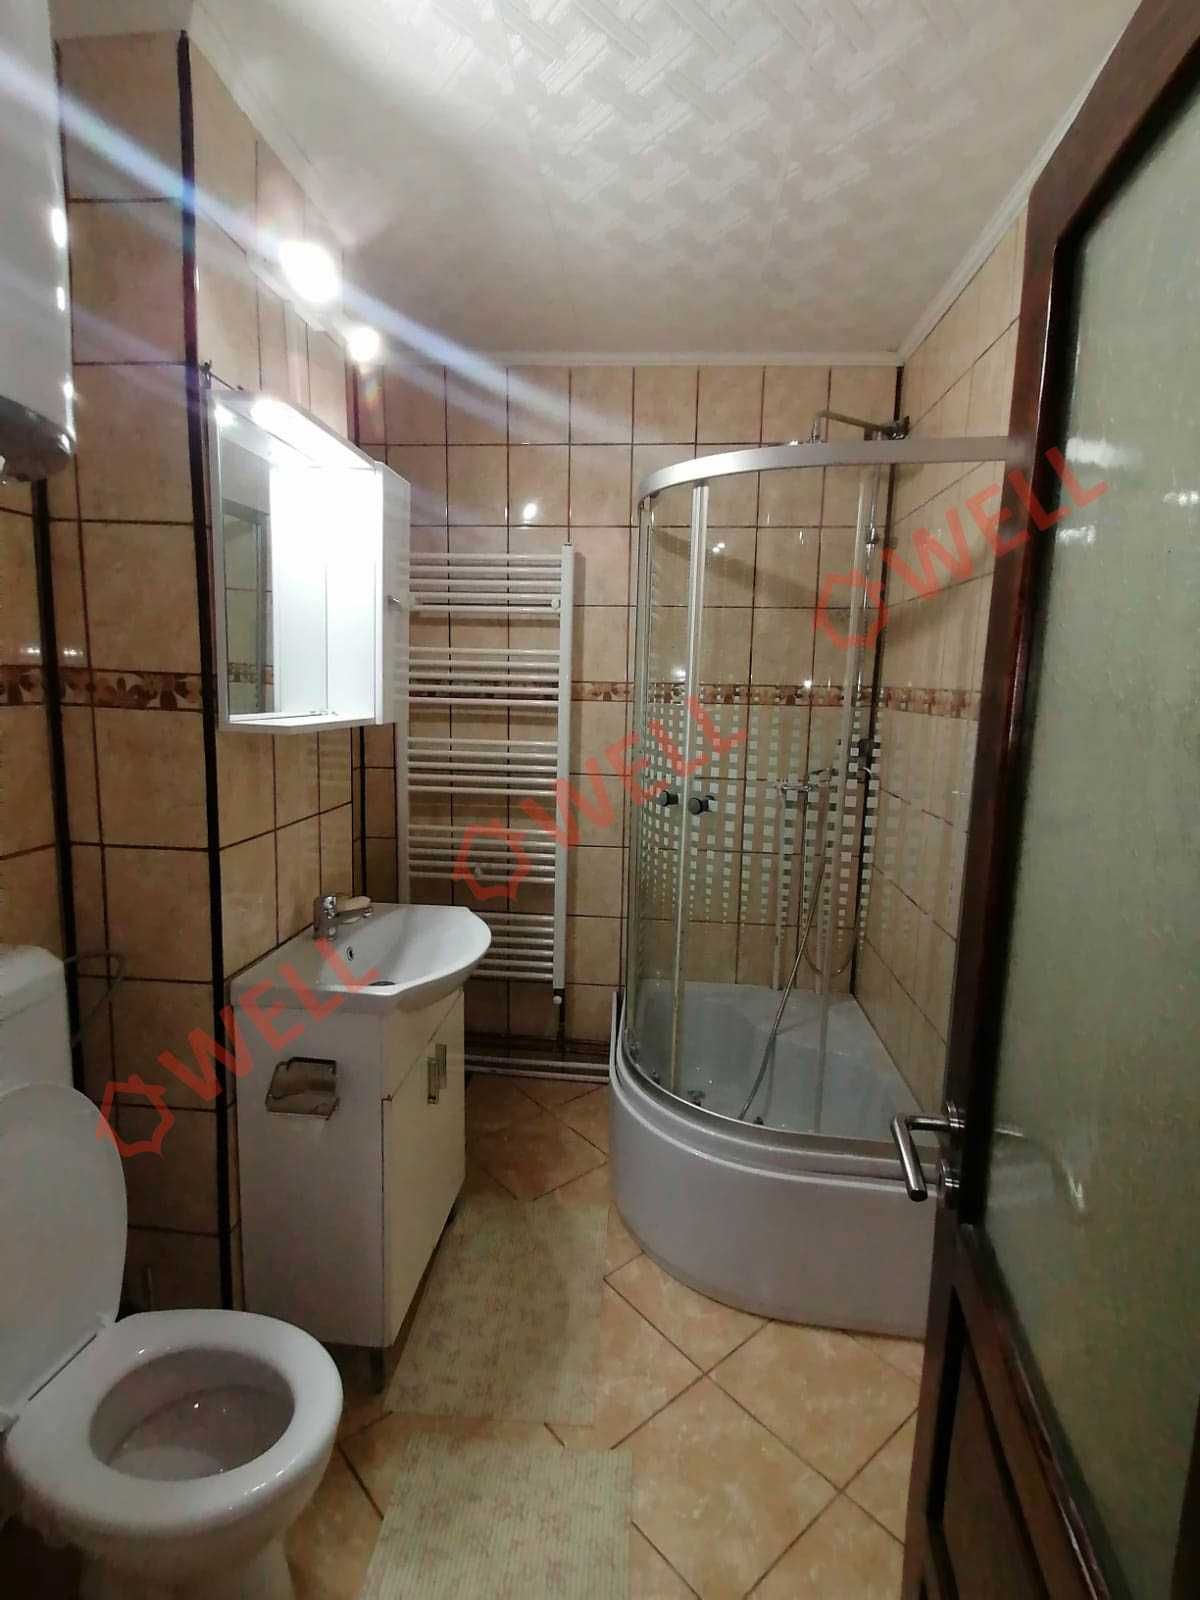 De vânzare apartament cu 3 camere în Ghelința!